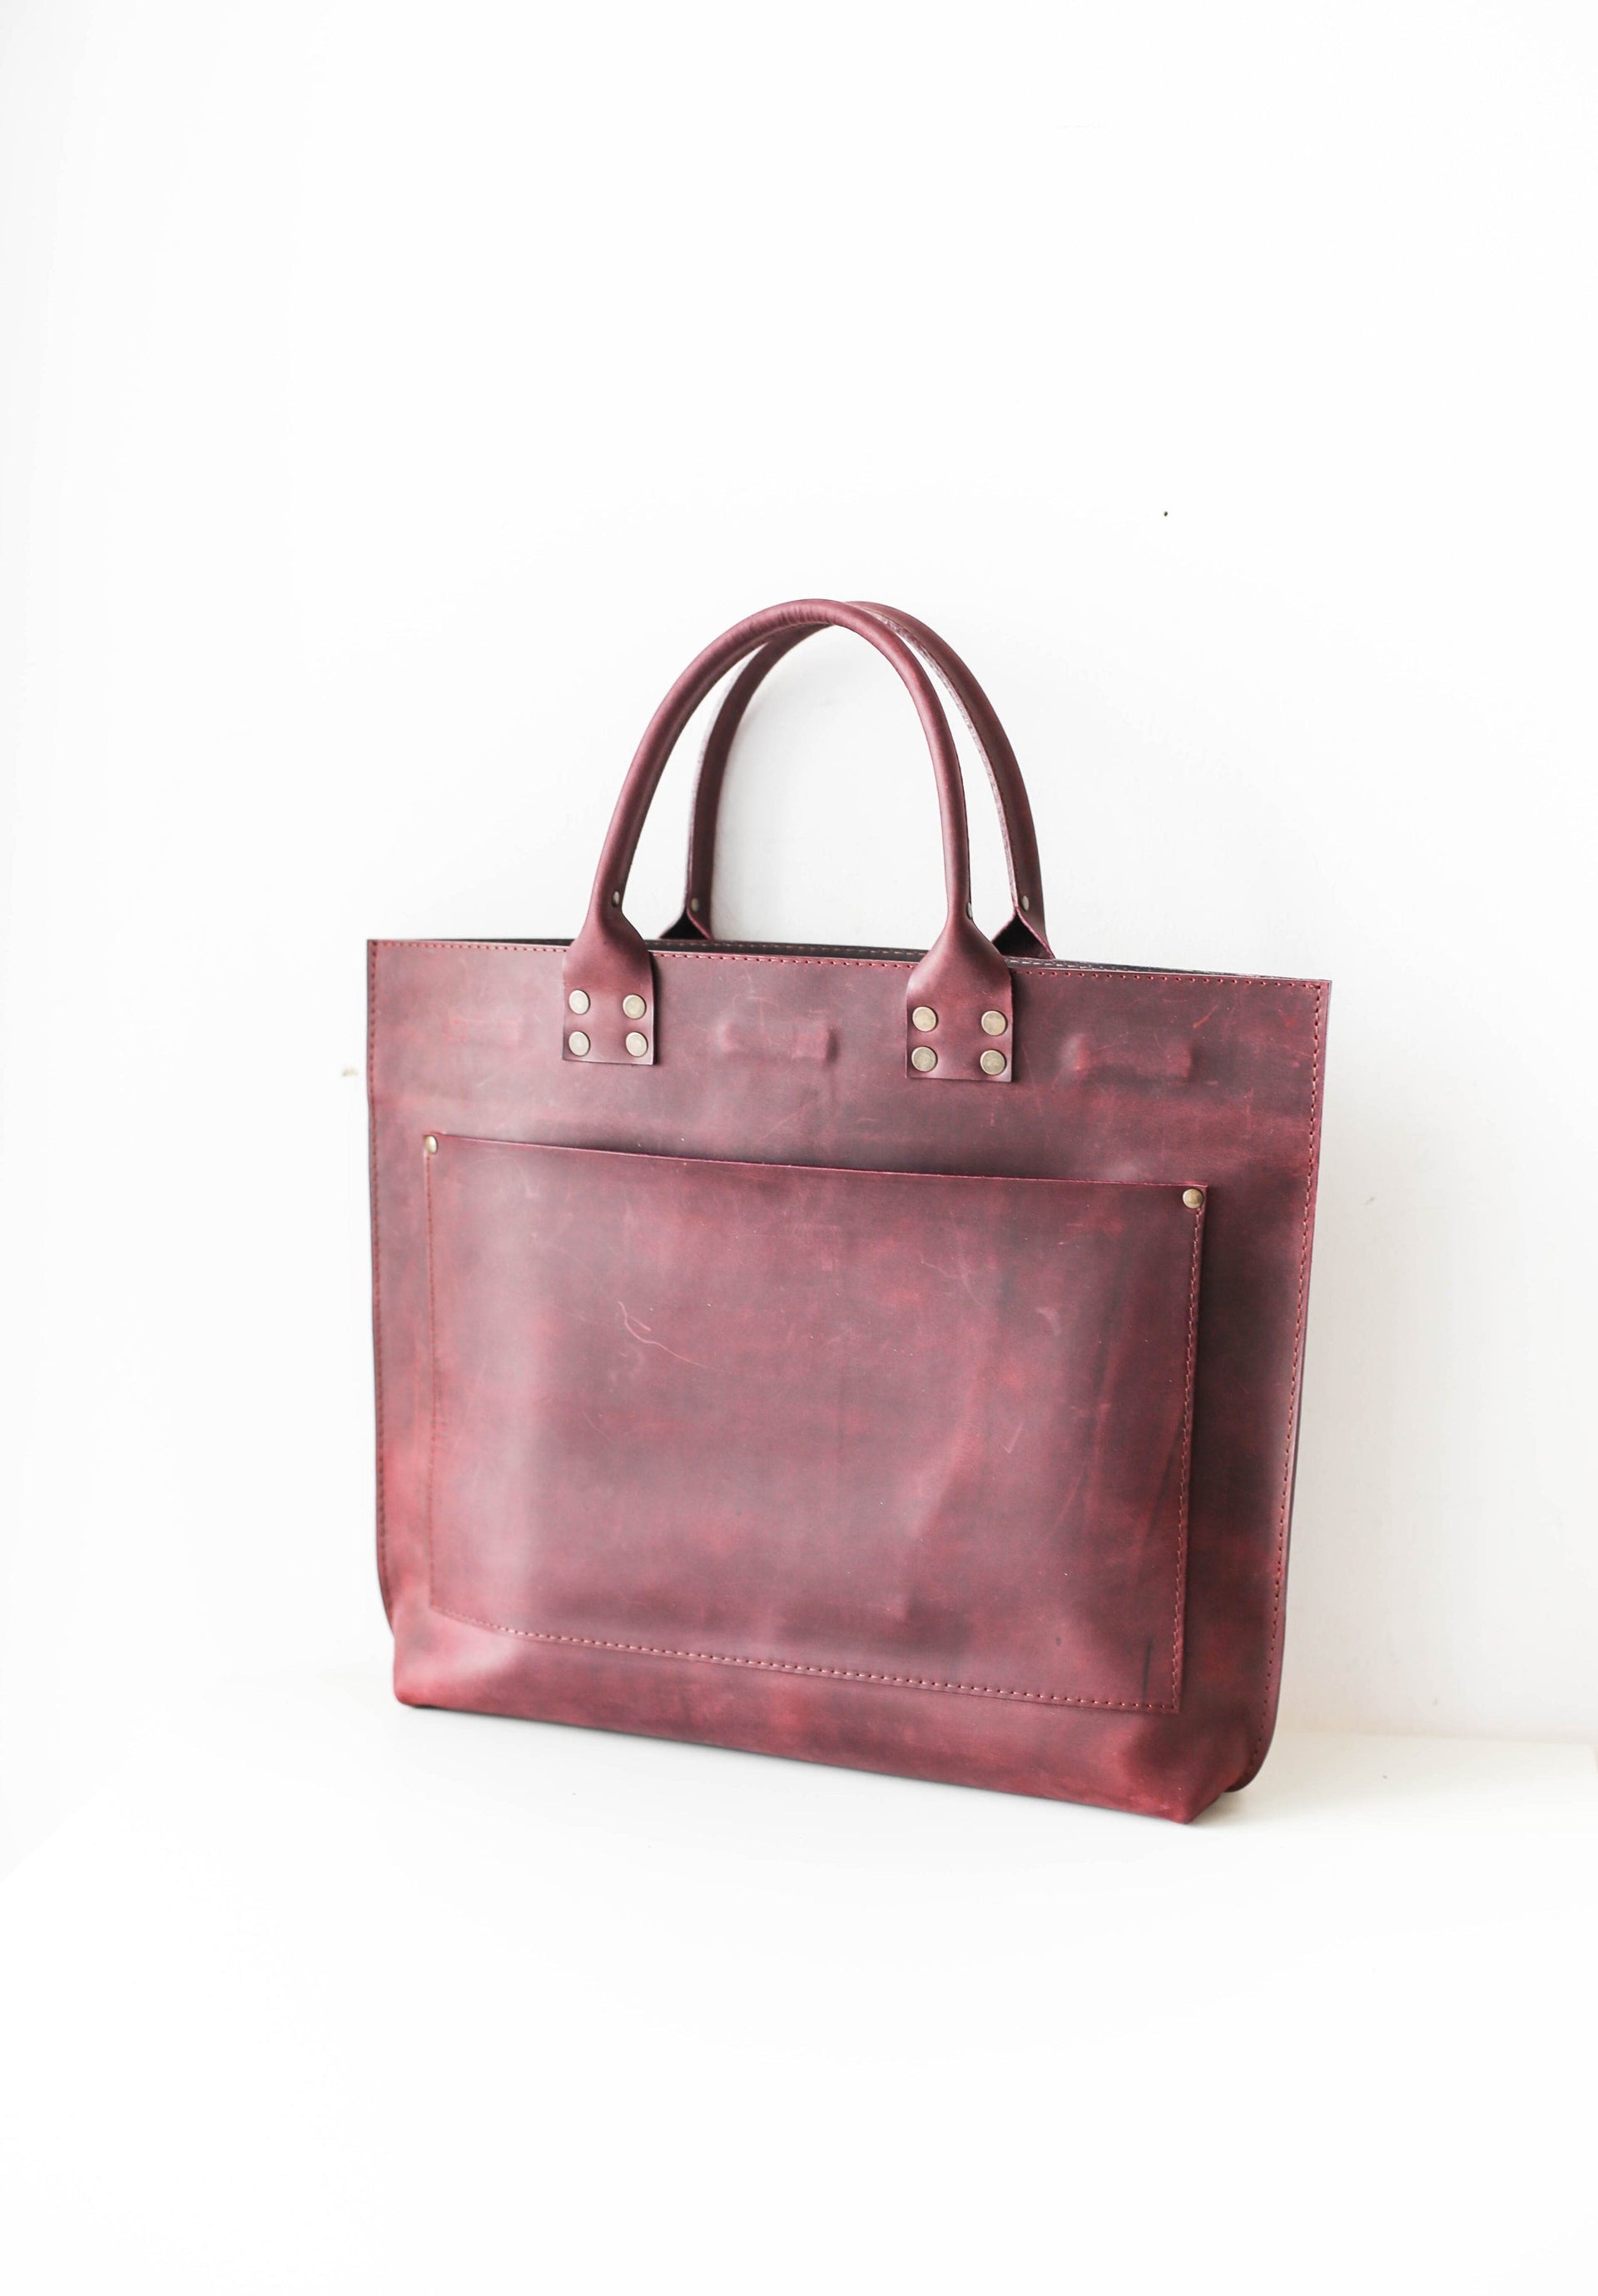 Designer Handbags for women